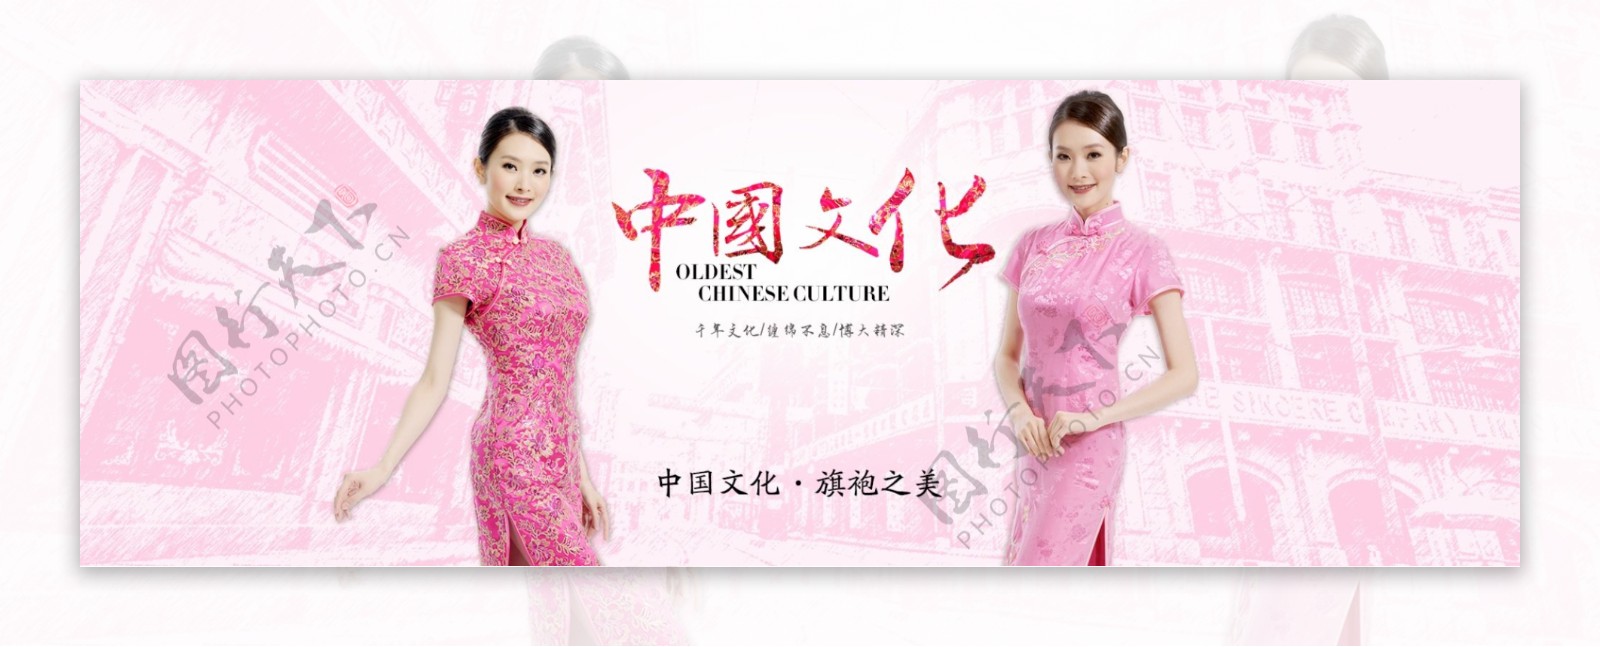 中国文化旗袍